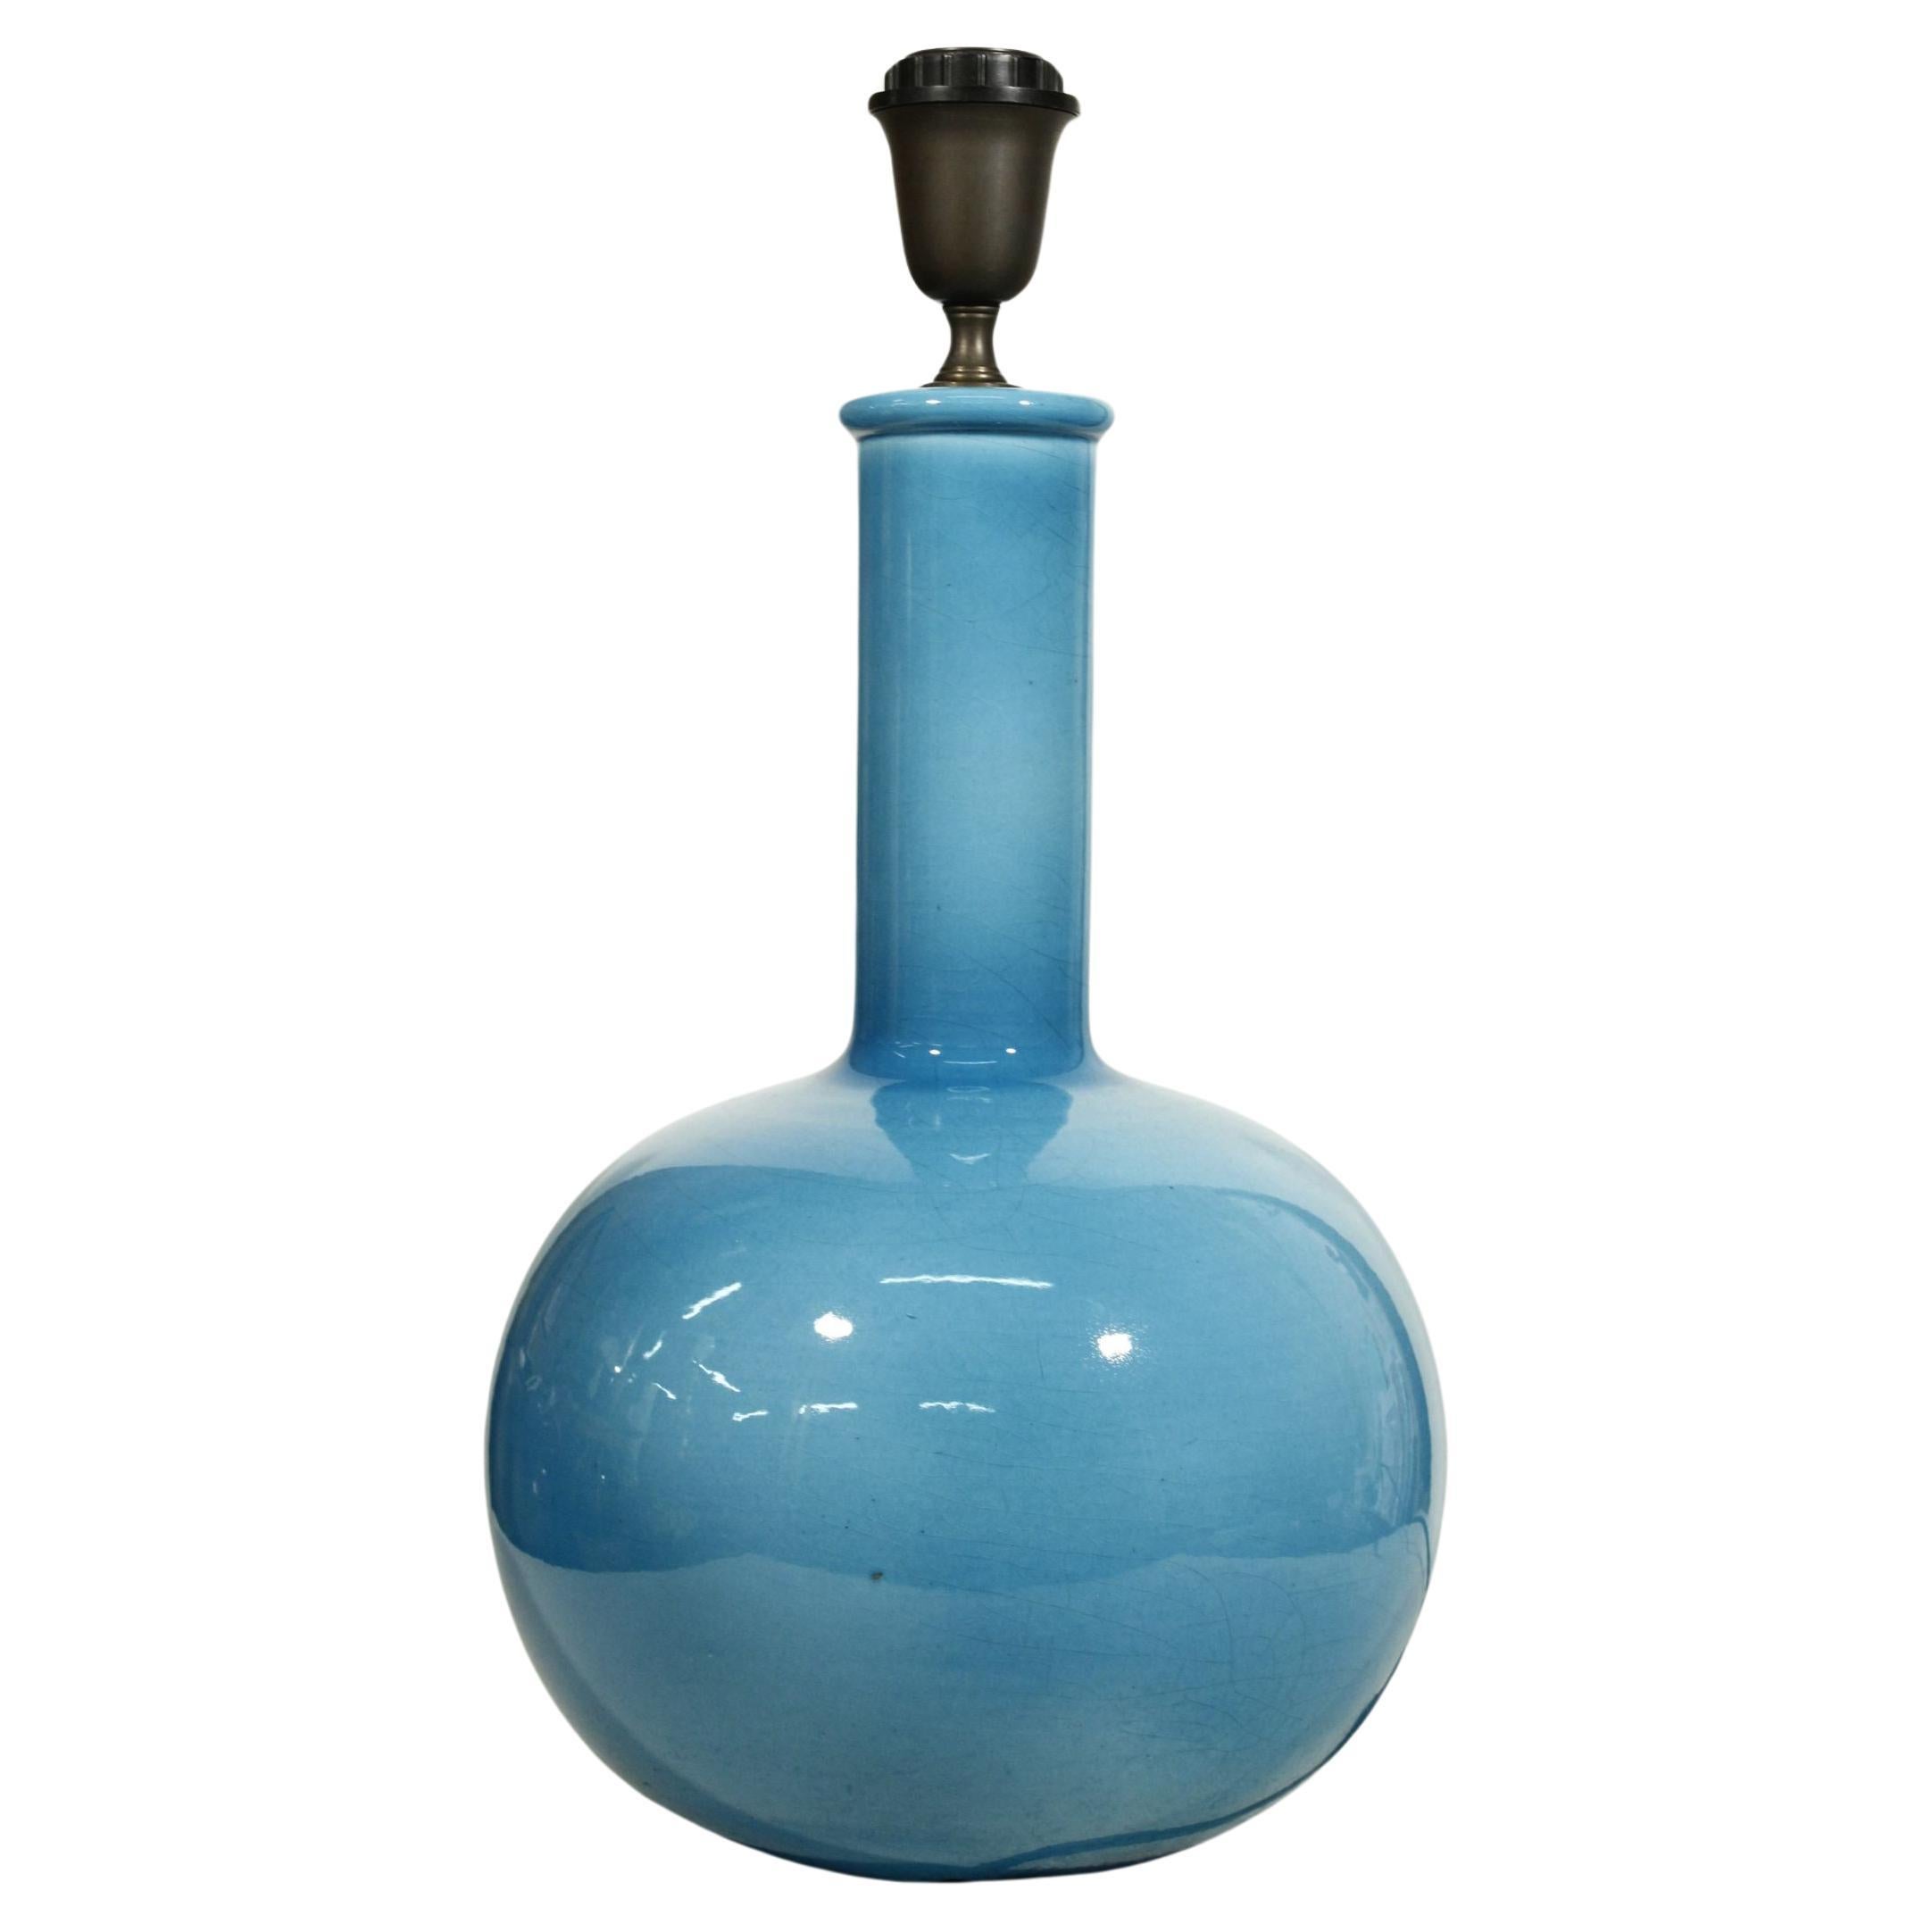 Base de lampe en céramique bleu céruléenne craquelée par Alvino Bagni, Italie, années 1960